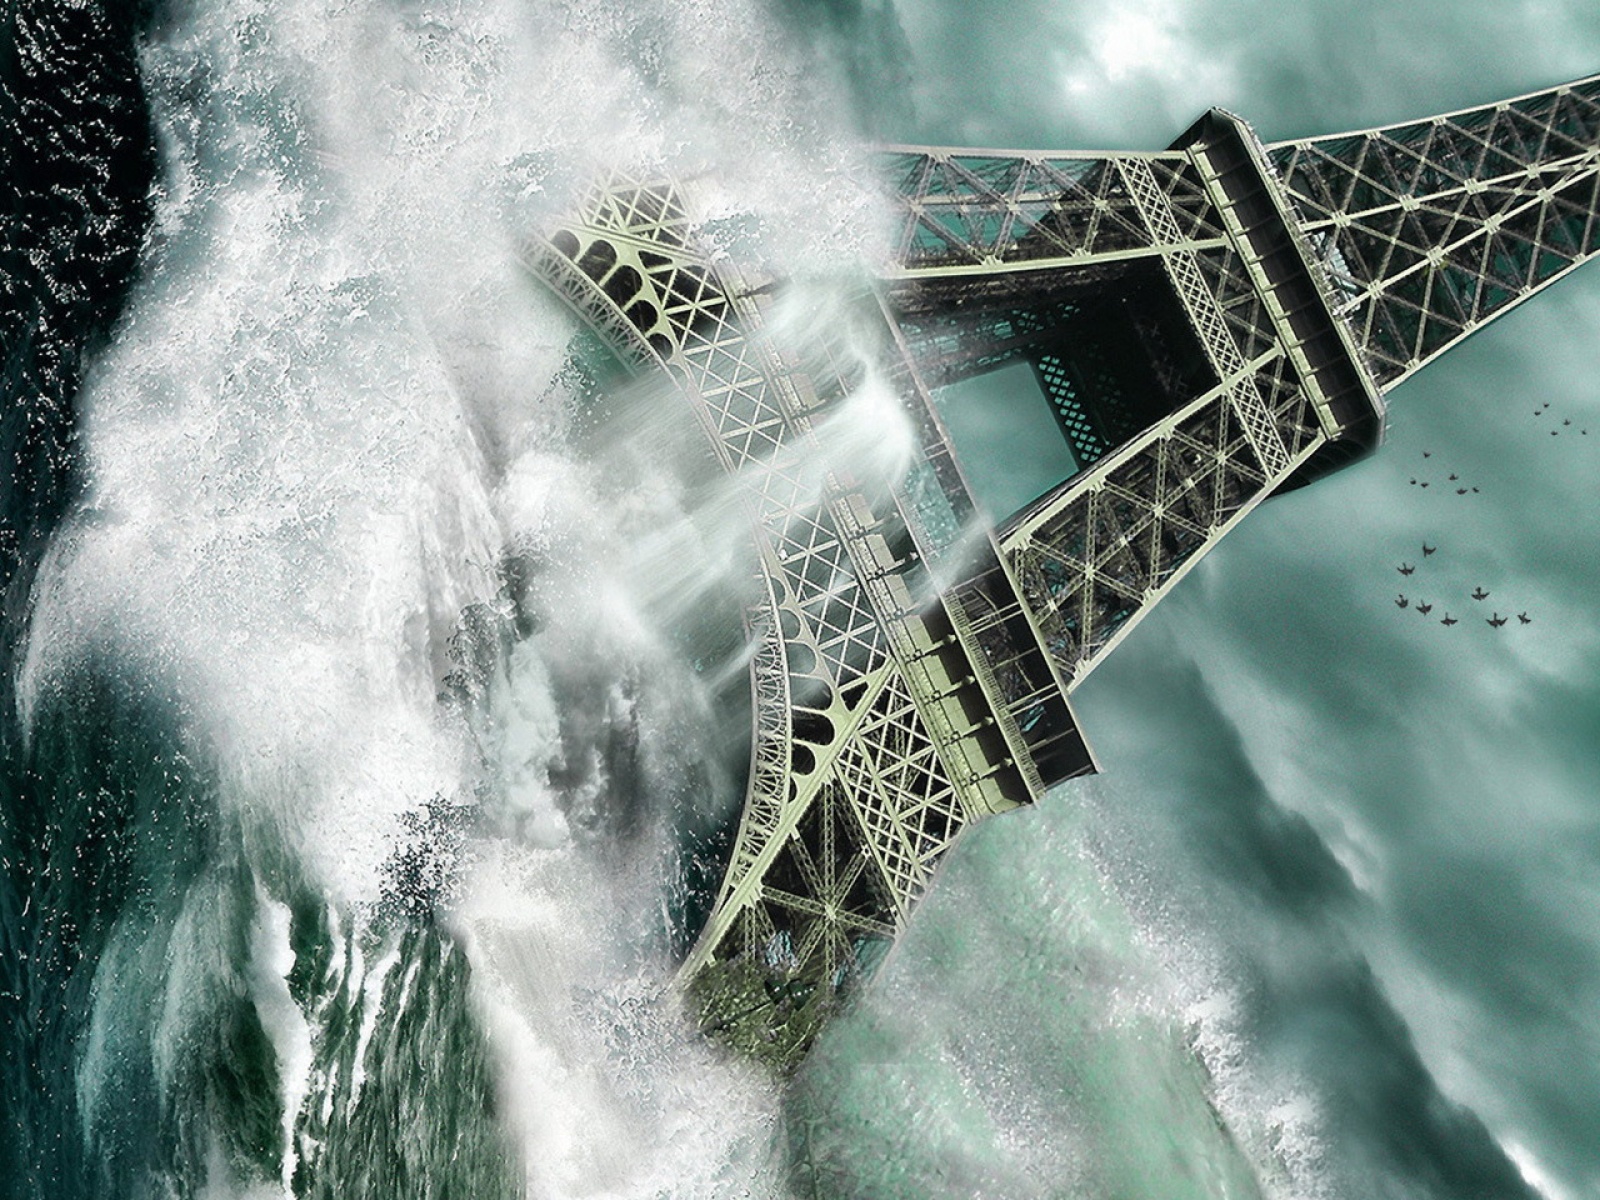 Fond d'ecran Paris sous l'eau